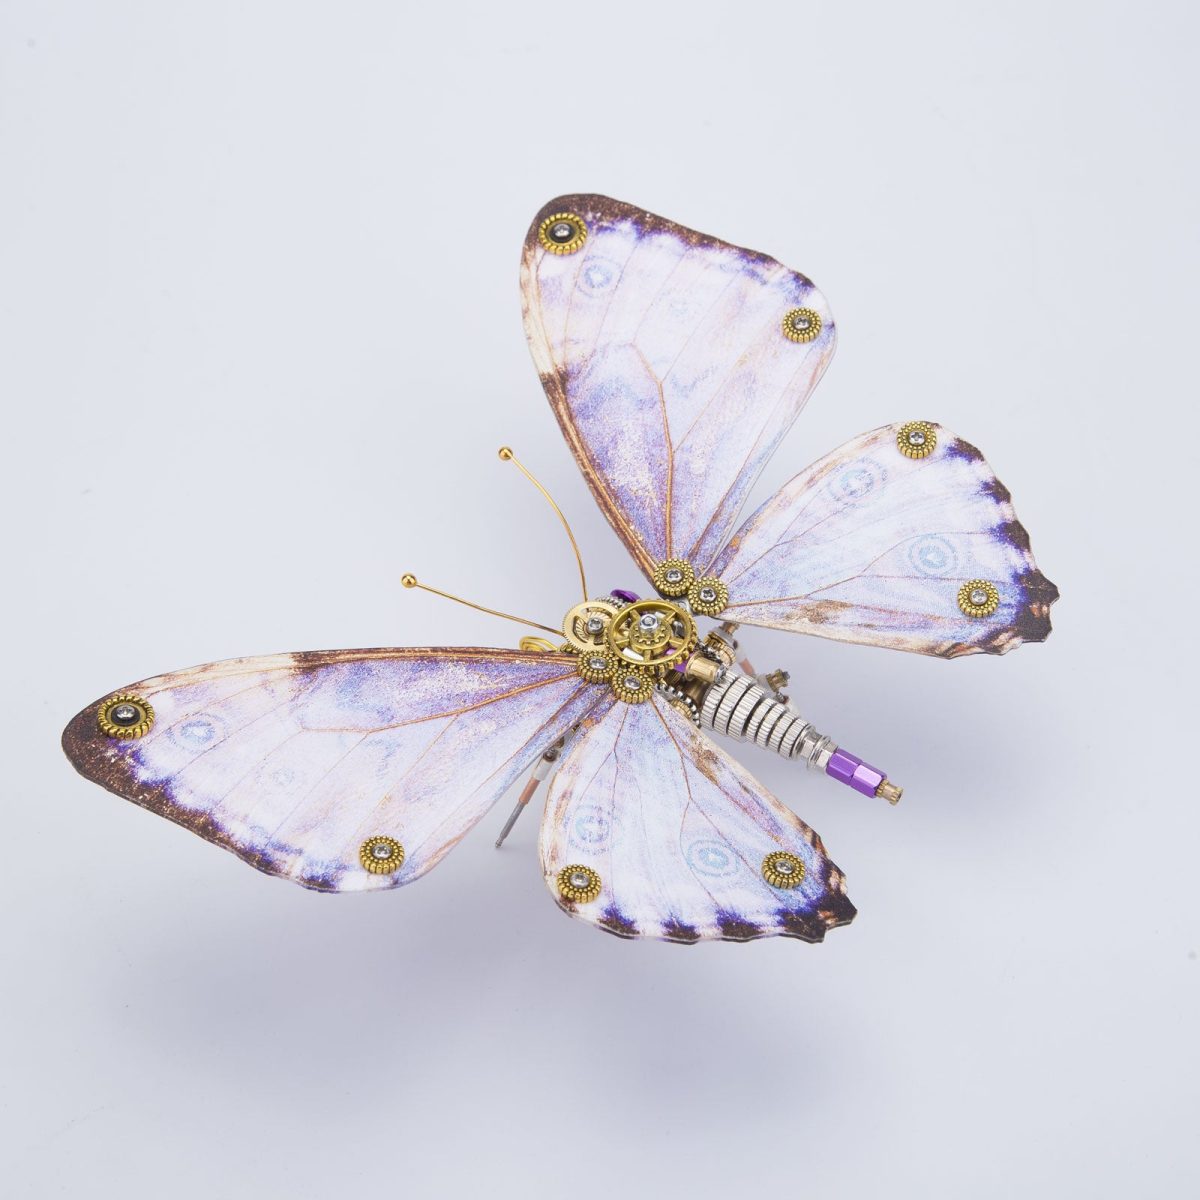 Steampunk Morpho Butterfly Metal Model